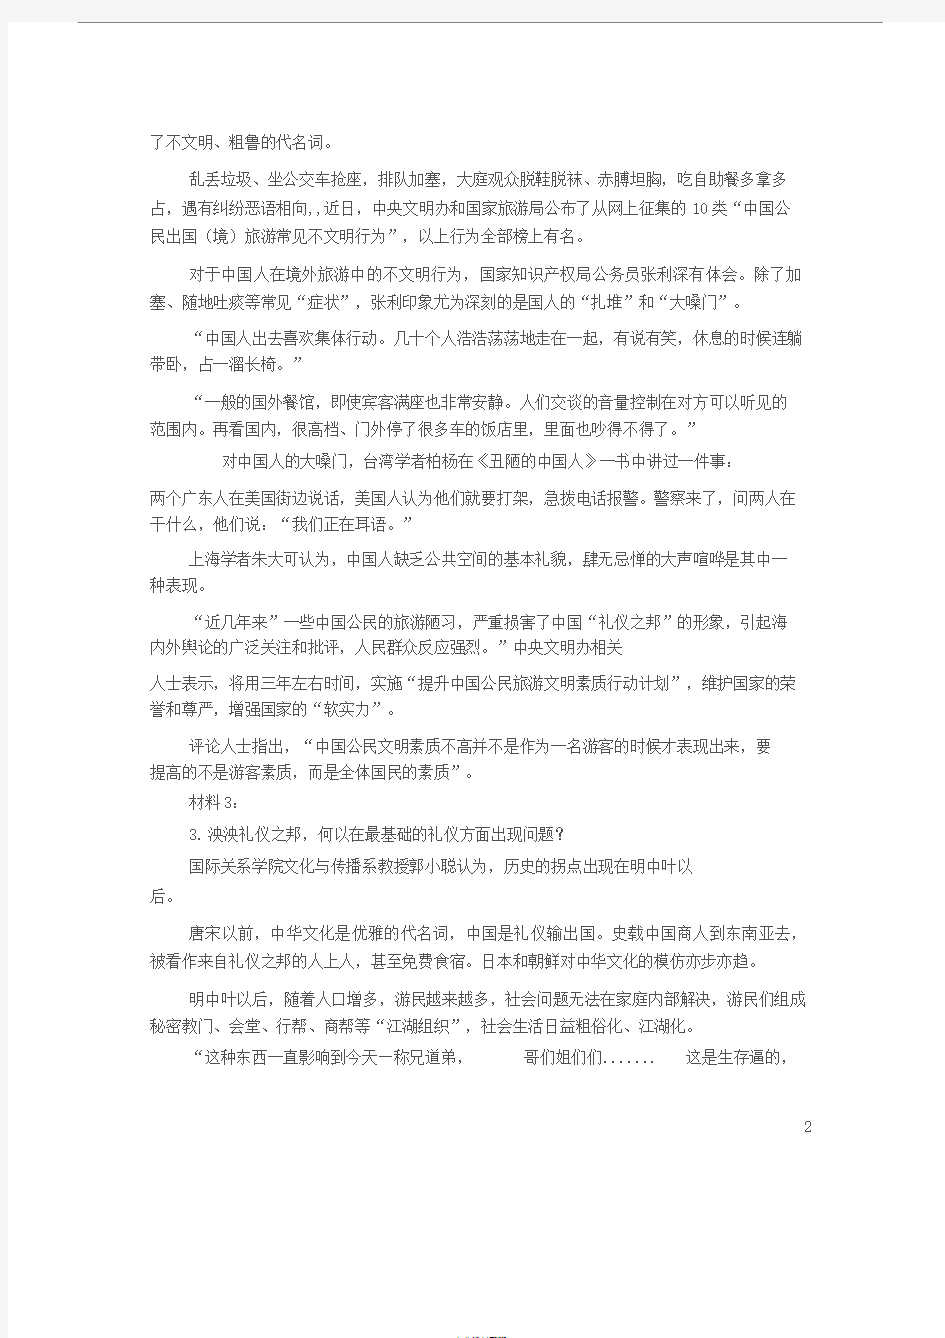 2015年天津市公务员考试《申论》笔试真题与答案解析